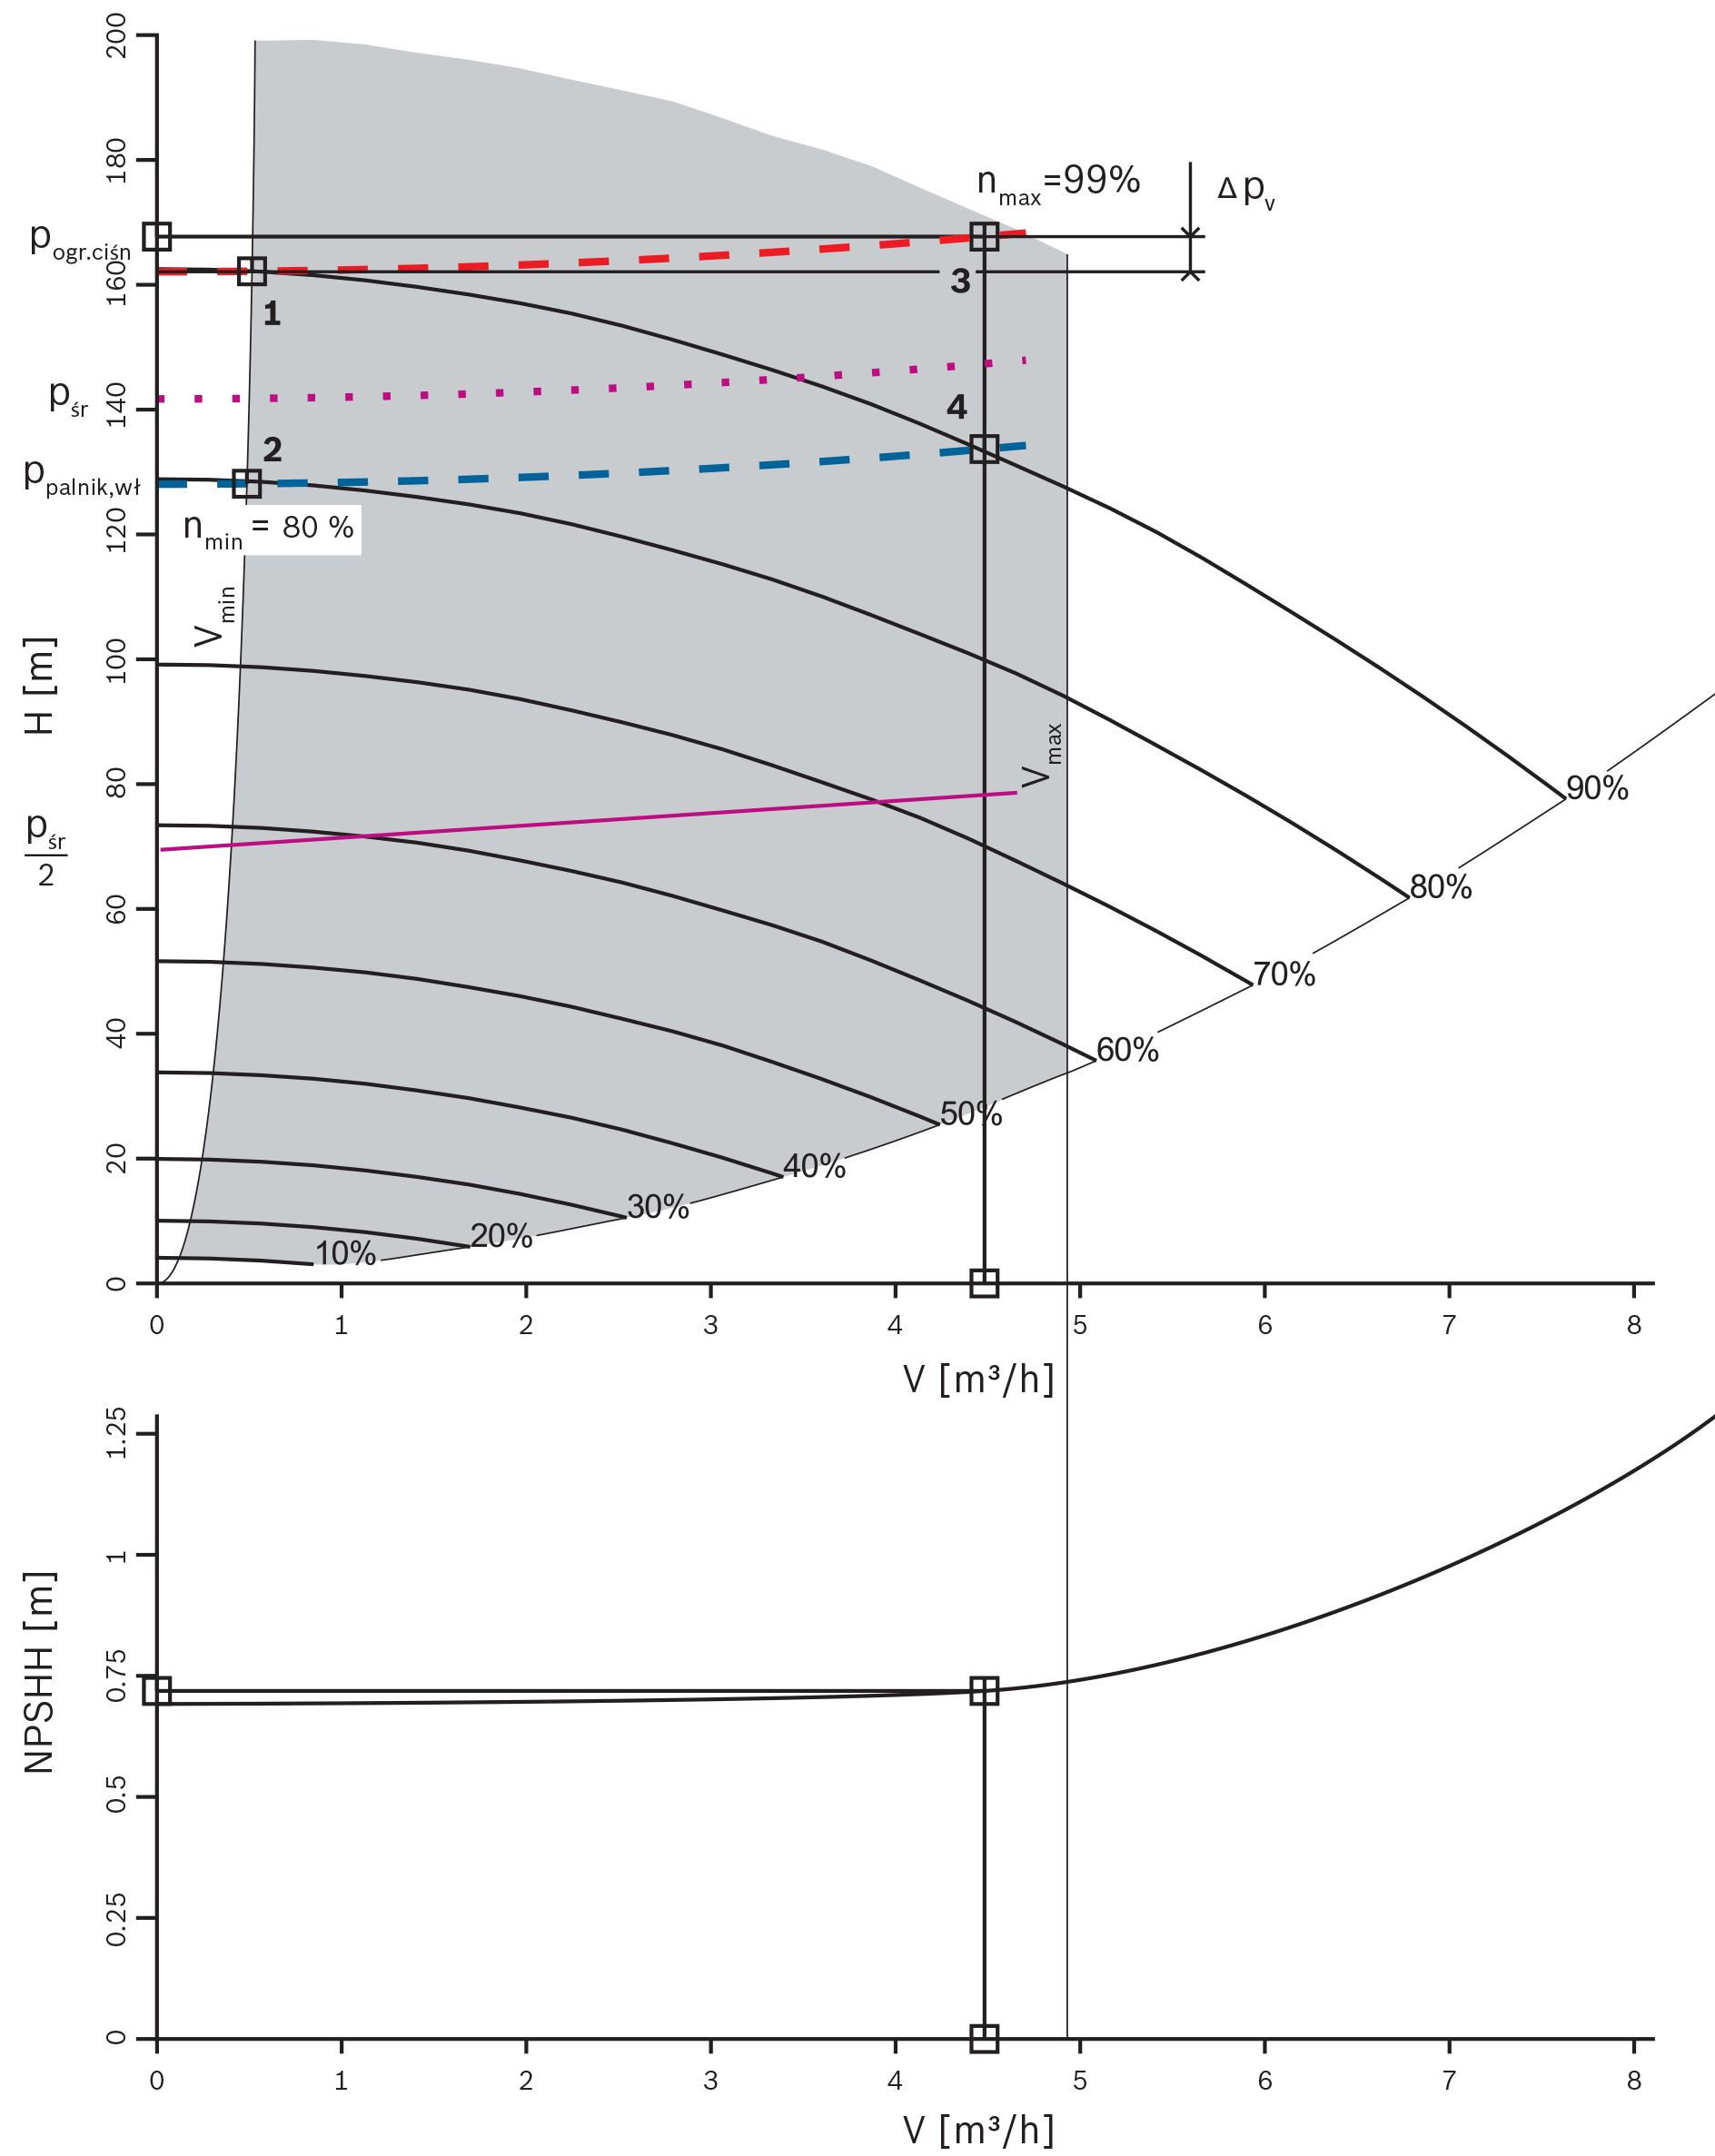 Przykład pola pracy pompy zasilającej kocioł z
regulowaną prędkością obrotową